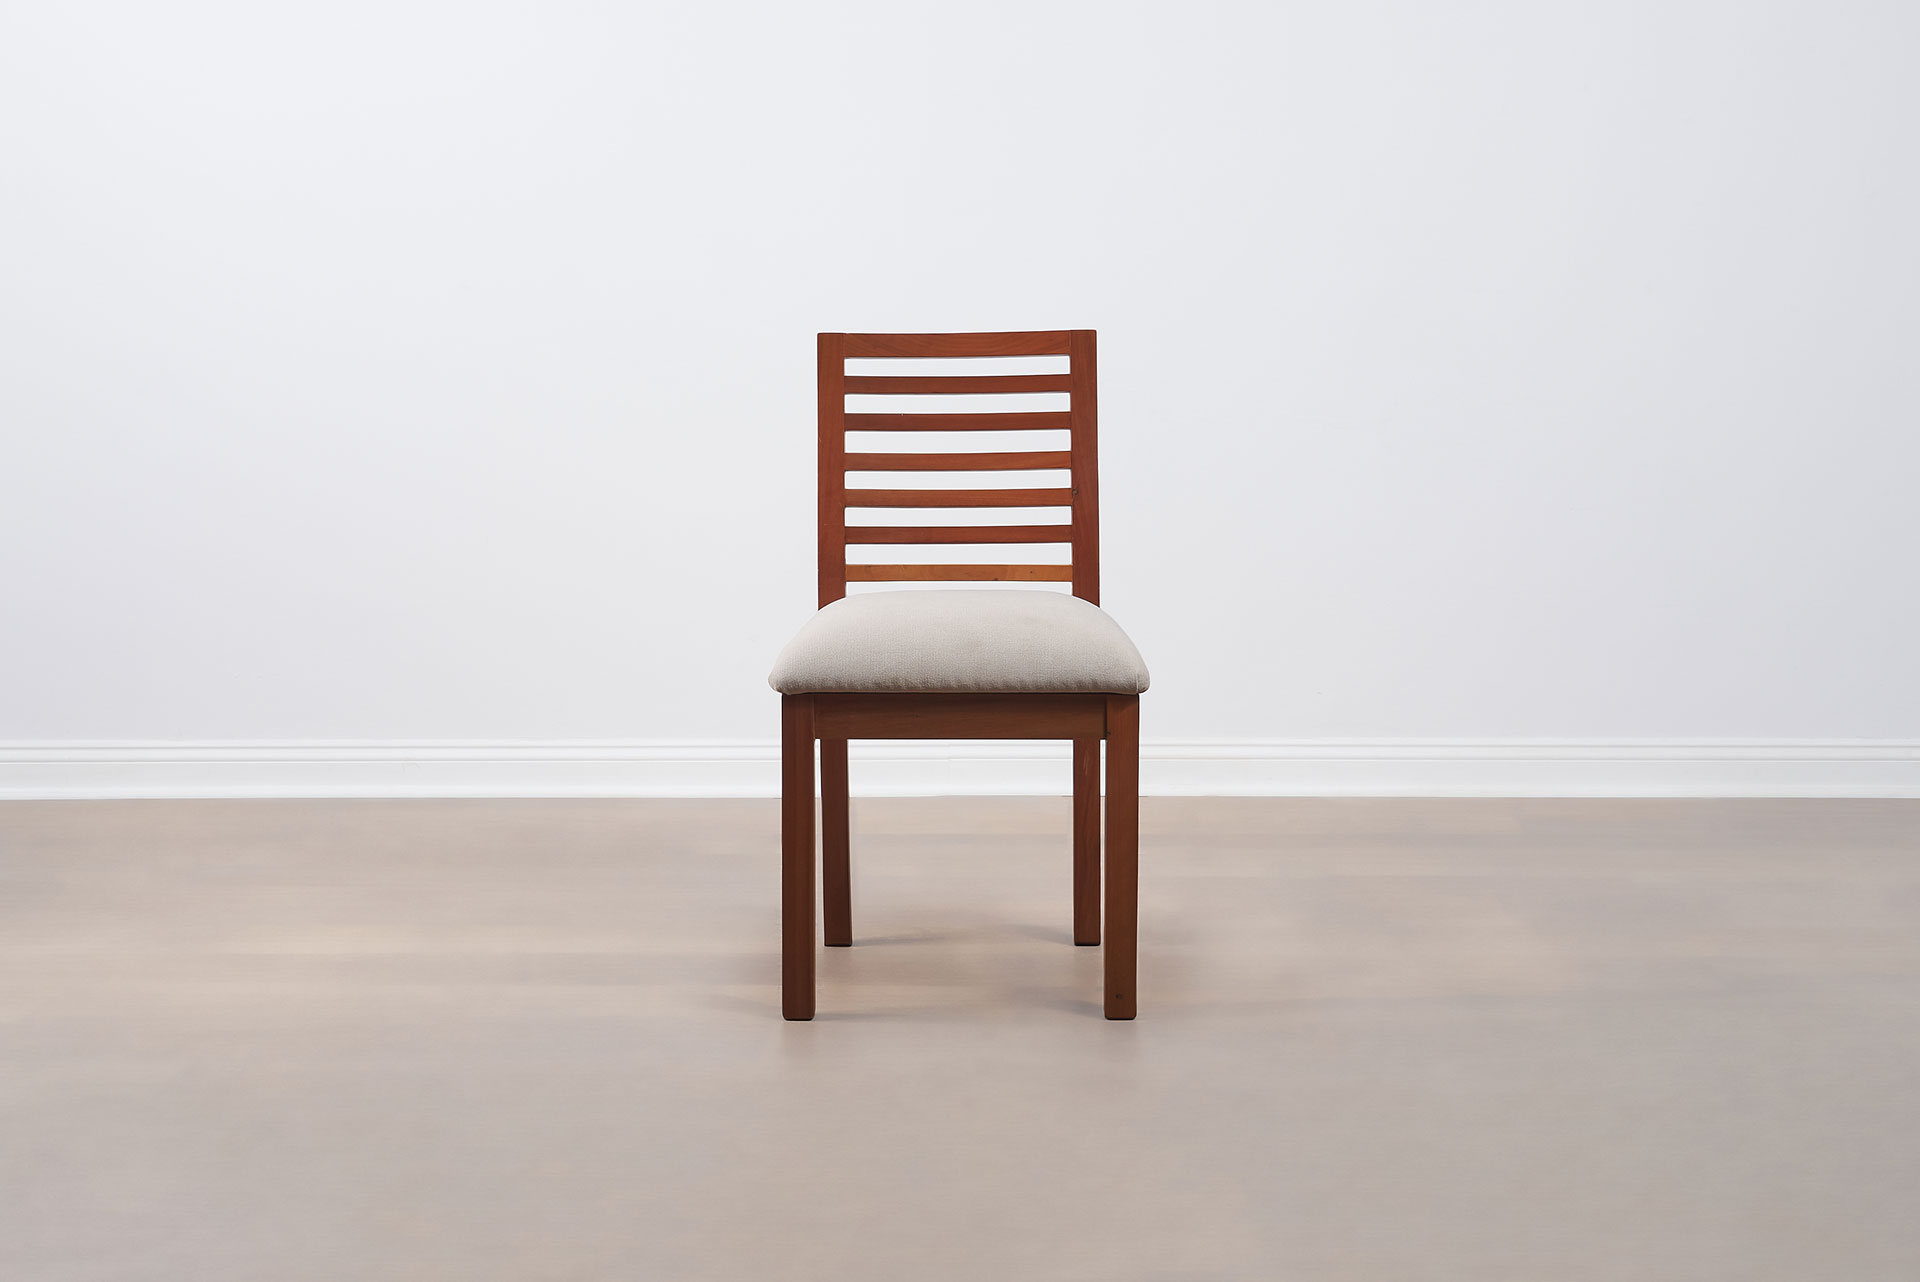 Muebles-Santander_Silla-Mieres_4580_silla_madera_textil